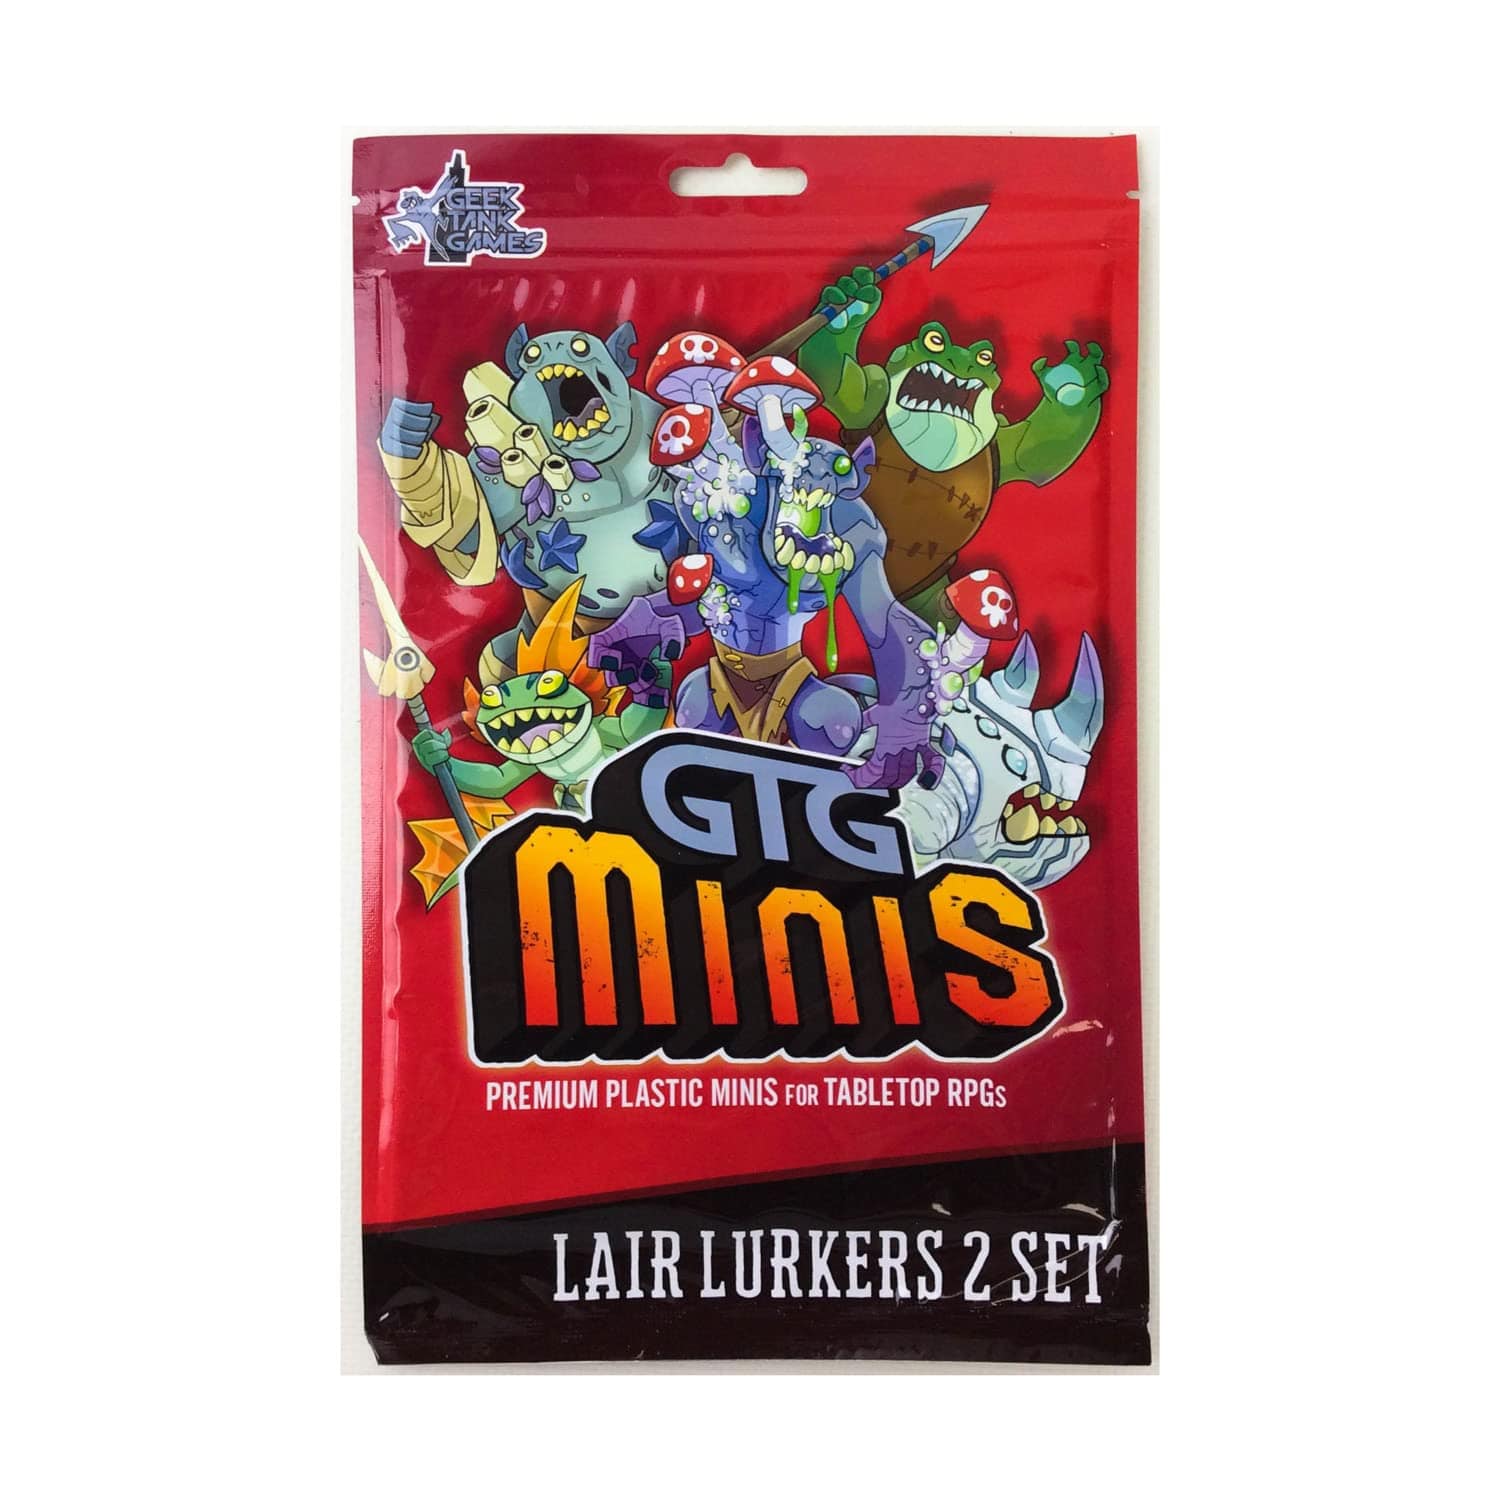 Geek Tanks Games Miniatures Games Geek Tanks Games GTG Minis: Lair Lurkers 2 Set